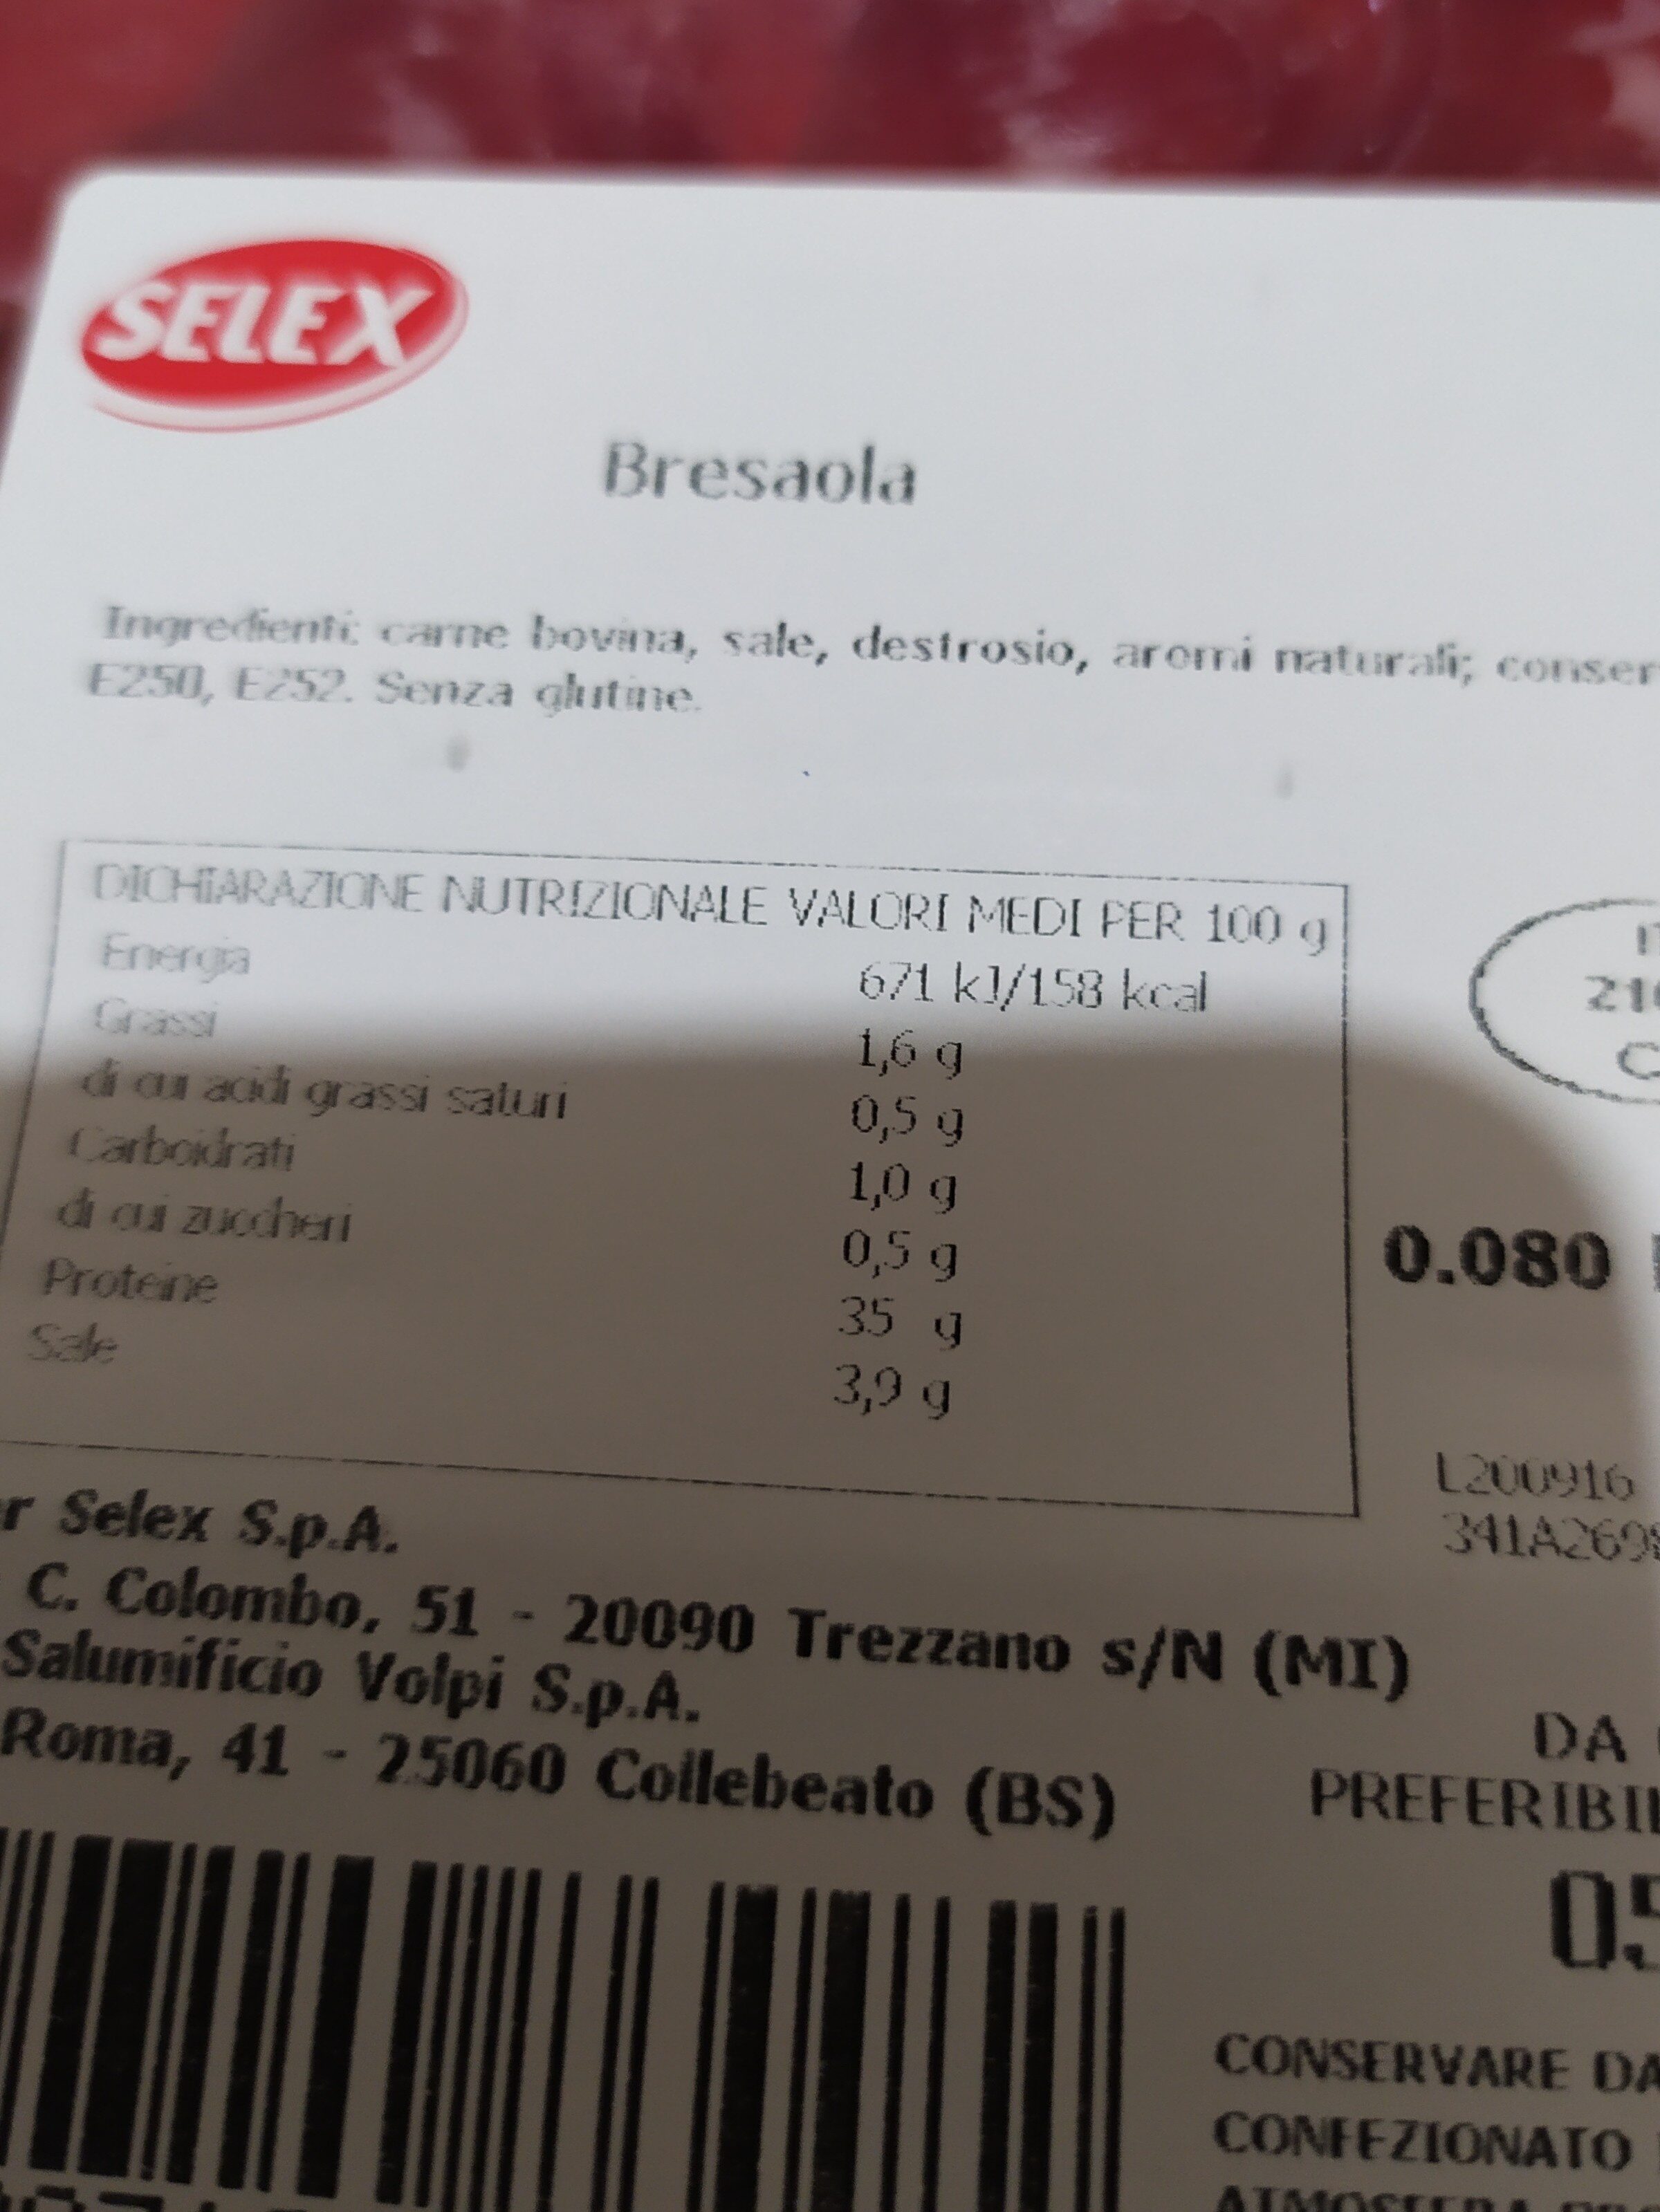 Bresaola a fette - Ingredients